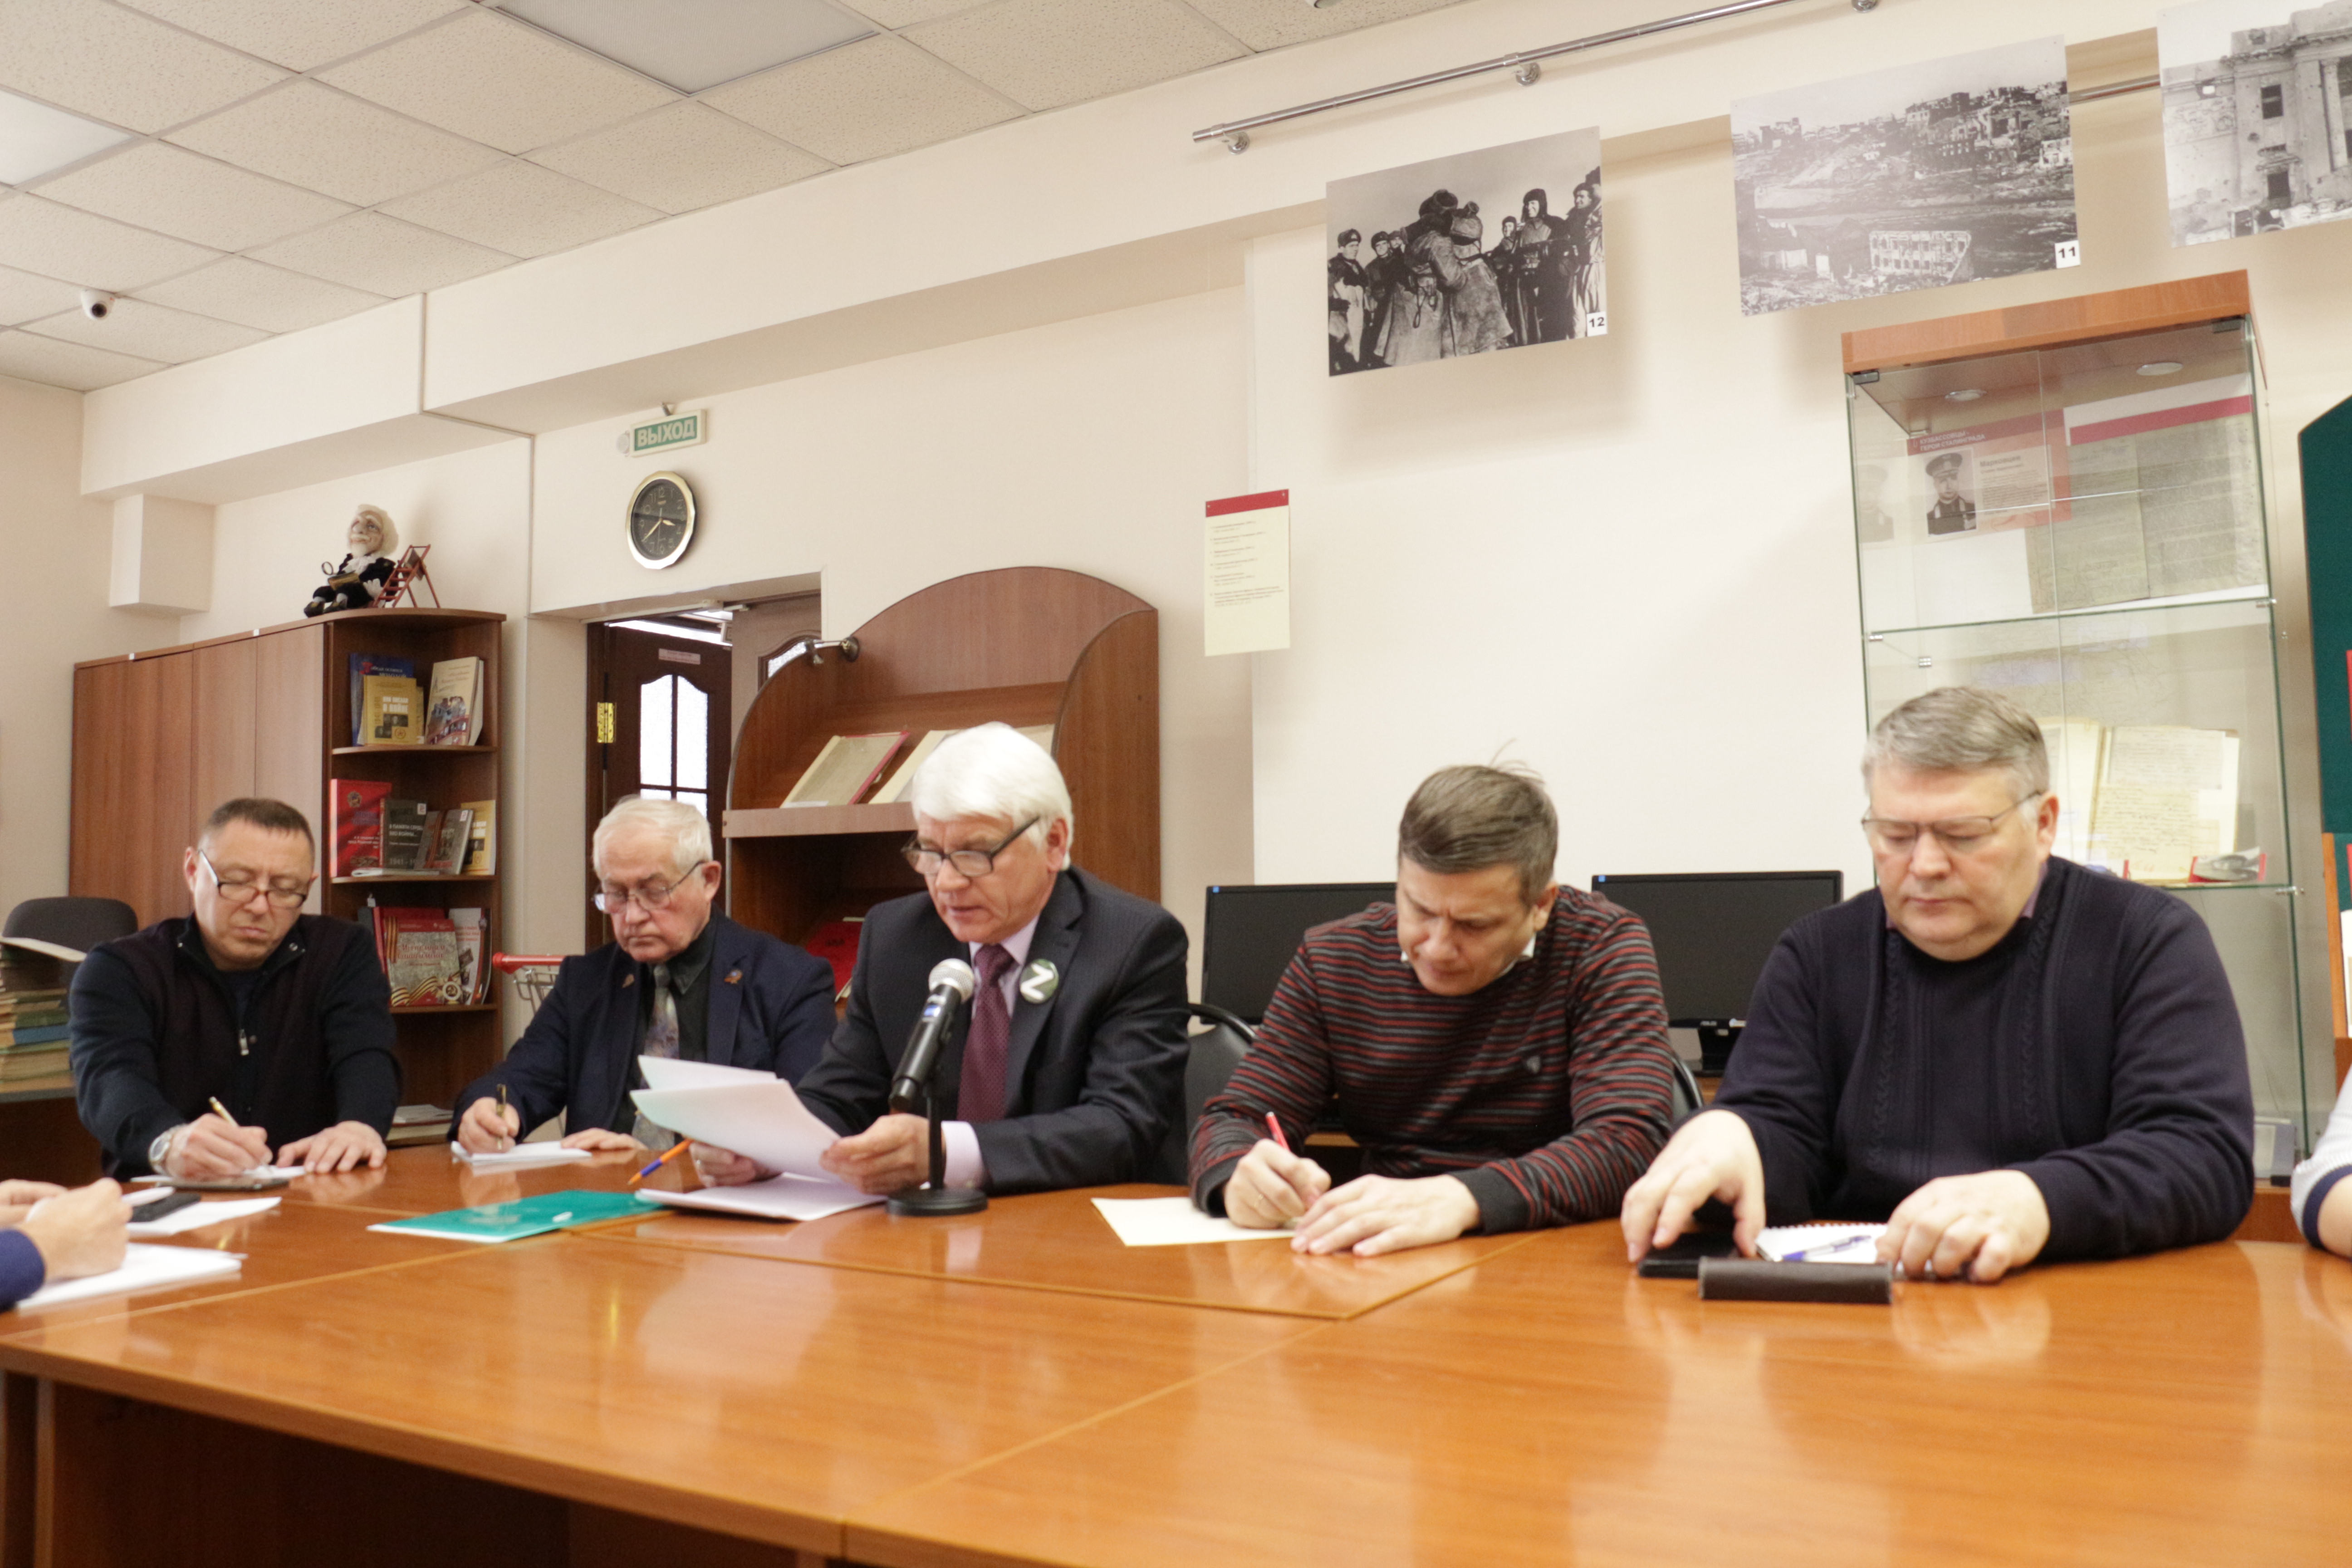 Состоялось организационное заседание рабочей группы по подготовке сборника архивных документов и электронной базы данных, посвященных 80-летию Победы советского народа в Великой Отечественной войне 1941-1945 гг.